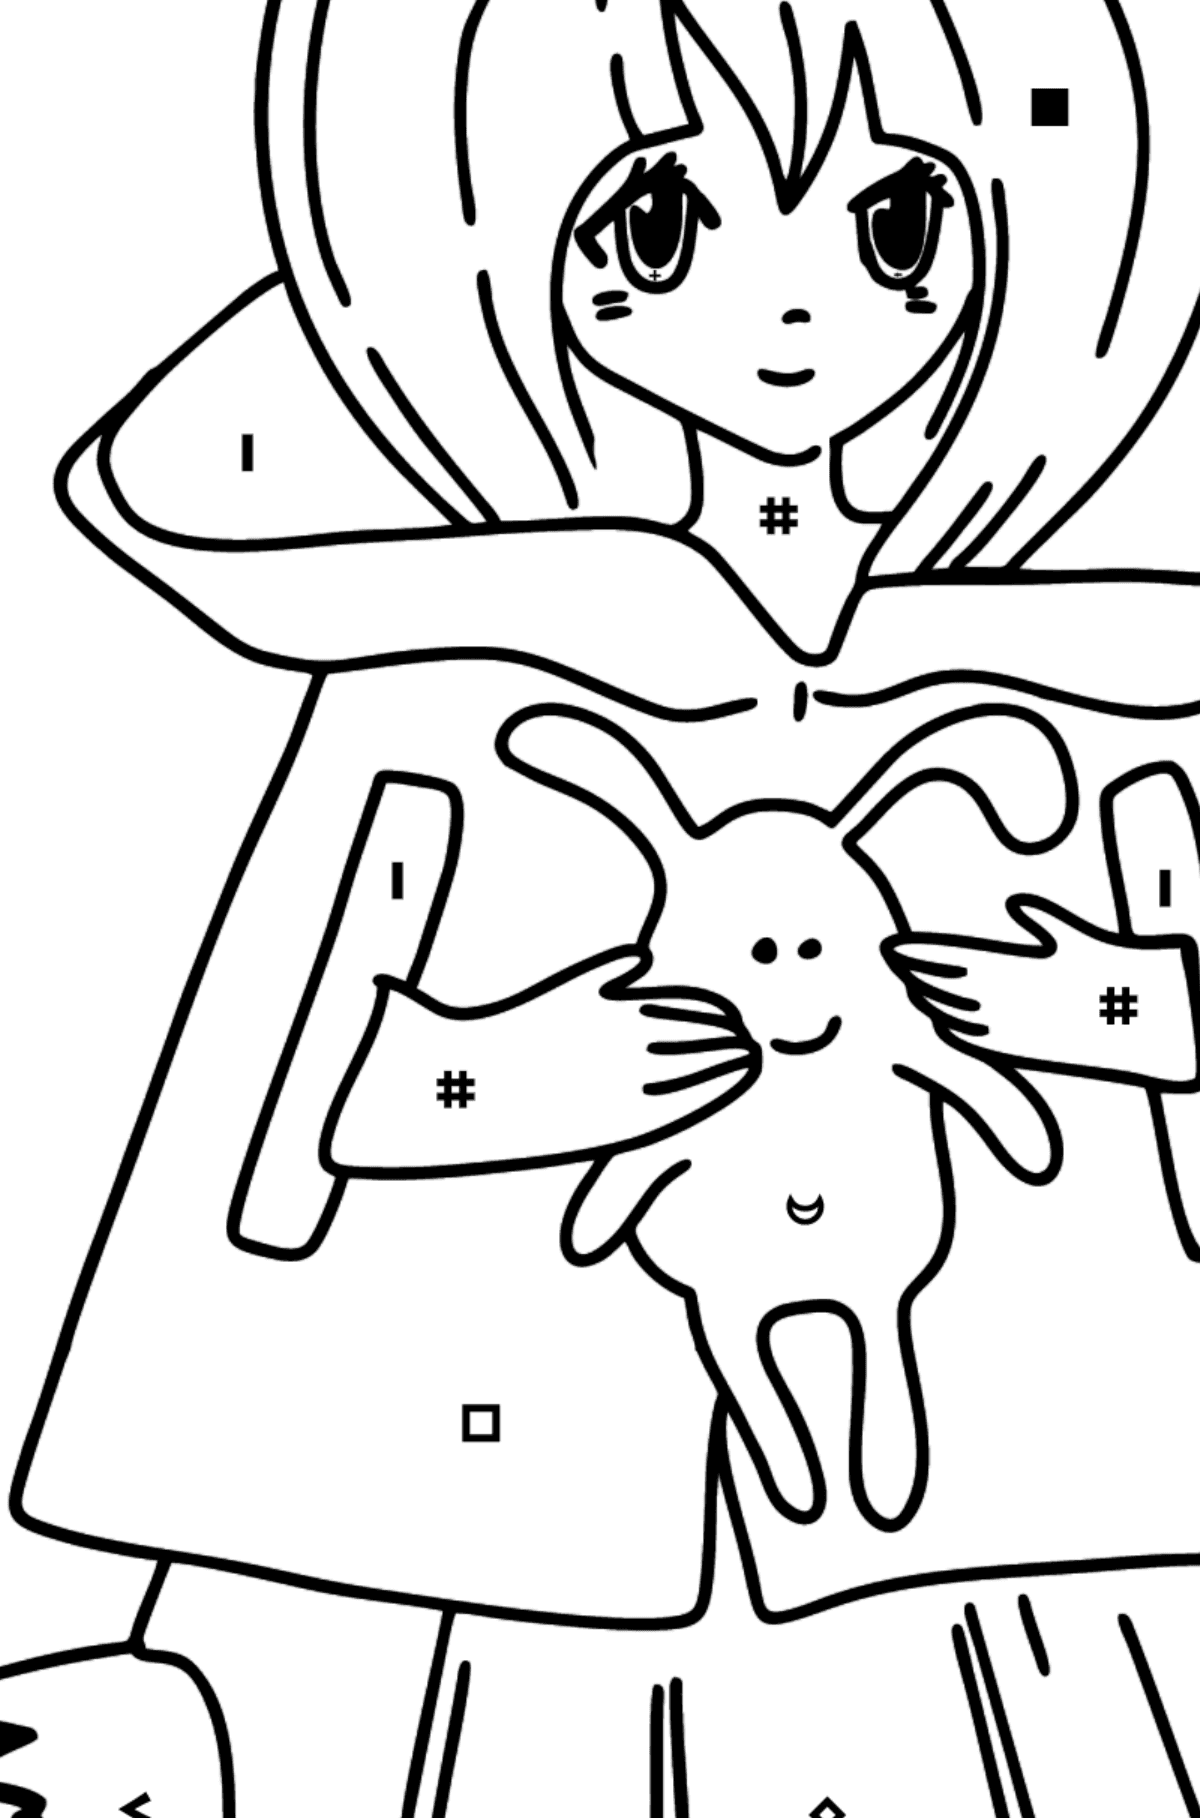 Anime meisje met staart kleurplaat - Kleuren met symbolen voor kinderen